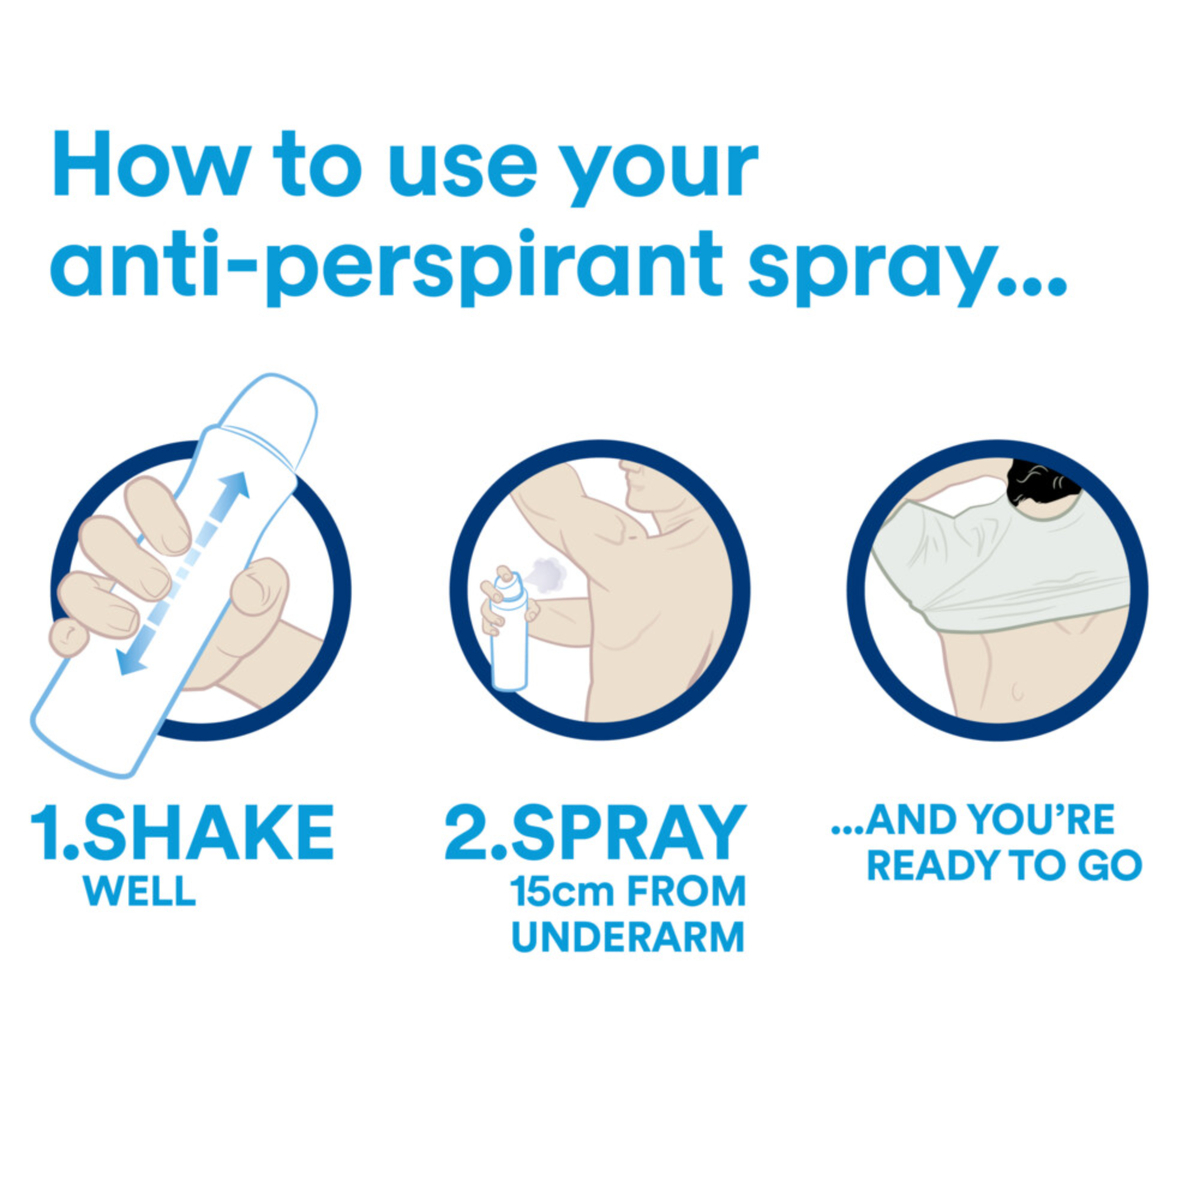 Dove Men+Care Antiperspirant Deodorant Extra Fresh 150ml